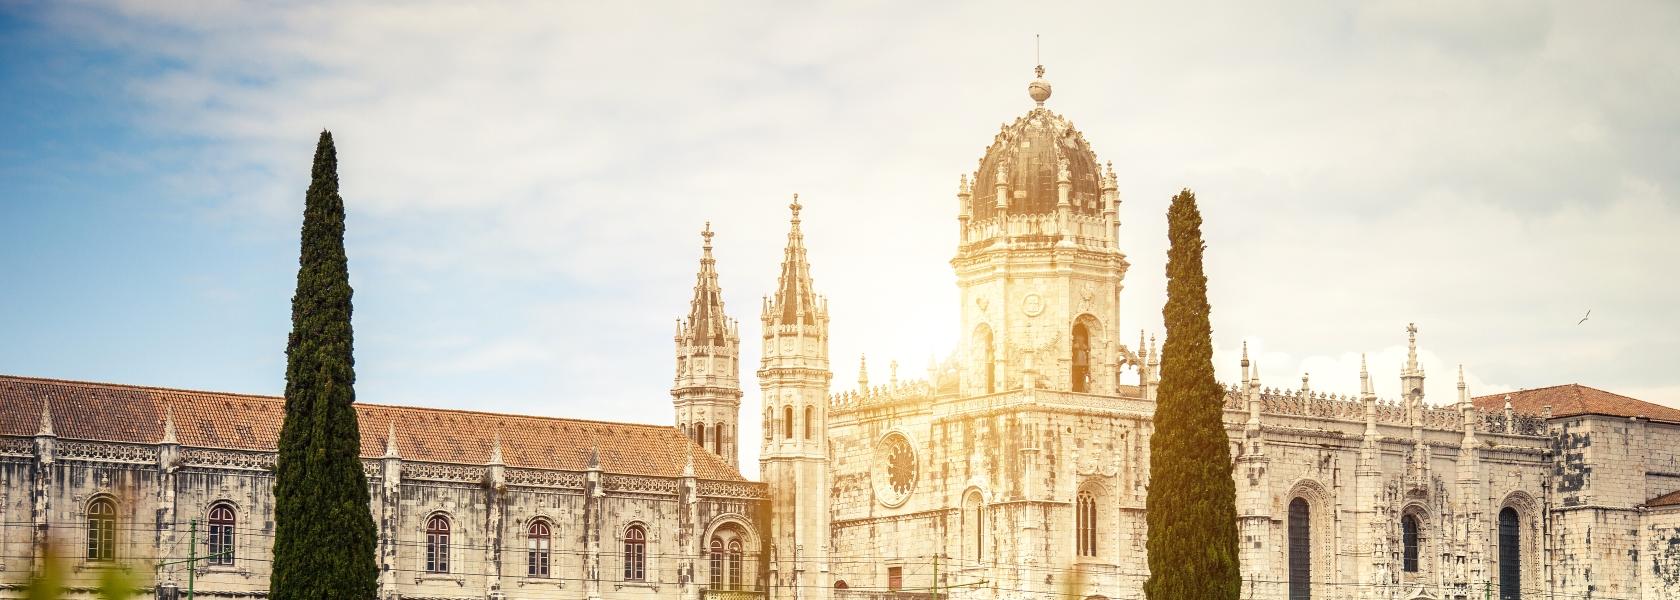 Visit the Mosteiro dos Jerónimos and munch a pastel de nata